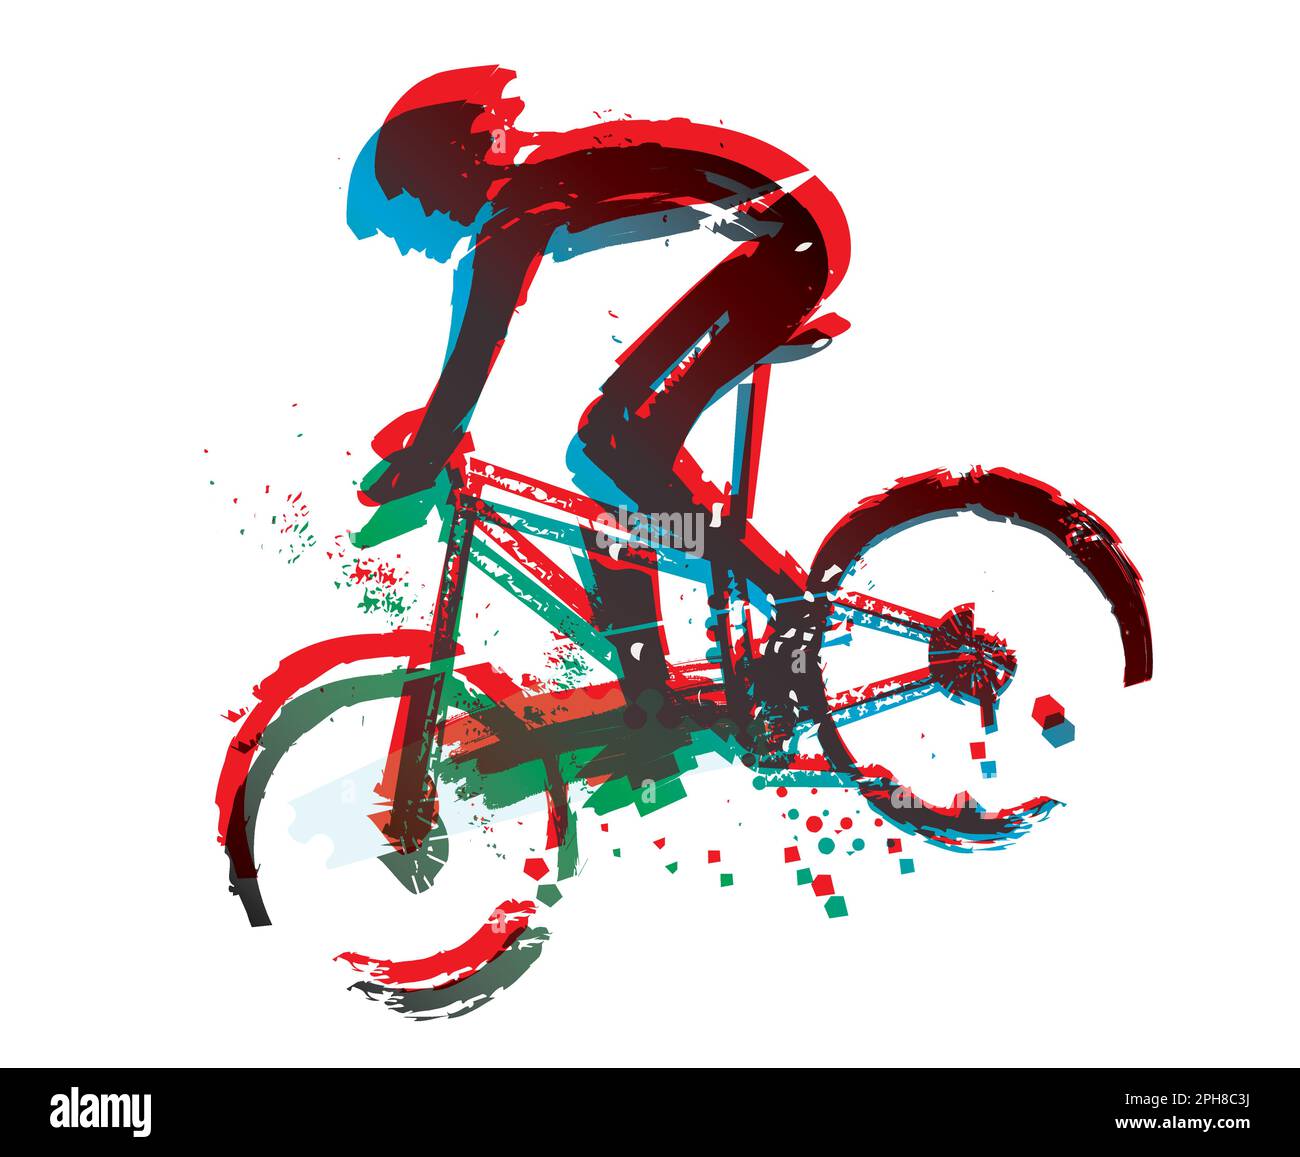 Mountainbiker auf Vollgas, Rennfahrer. Ausdrucksstarke, stilisierte, farbenfrohe Darstellung eines Mountainbike-Radfahrers. Vektor verfügbar. Stock Vektor